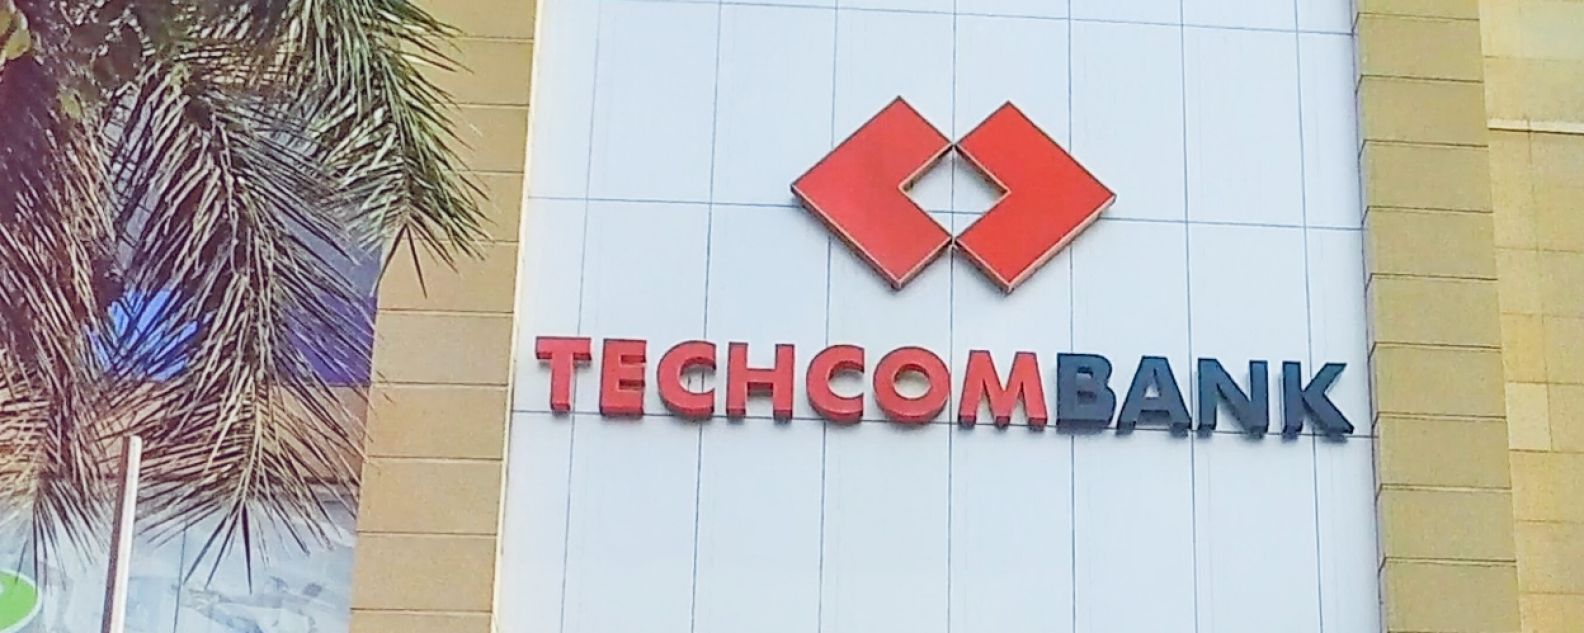 Exterior of Techcombank building